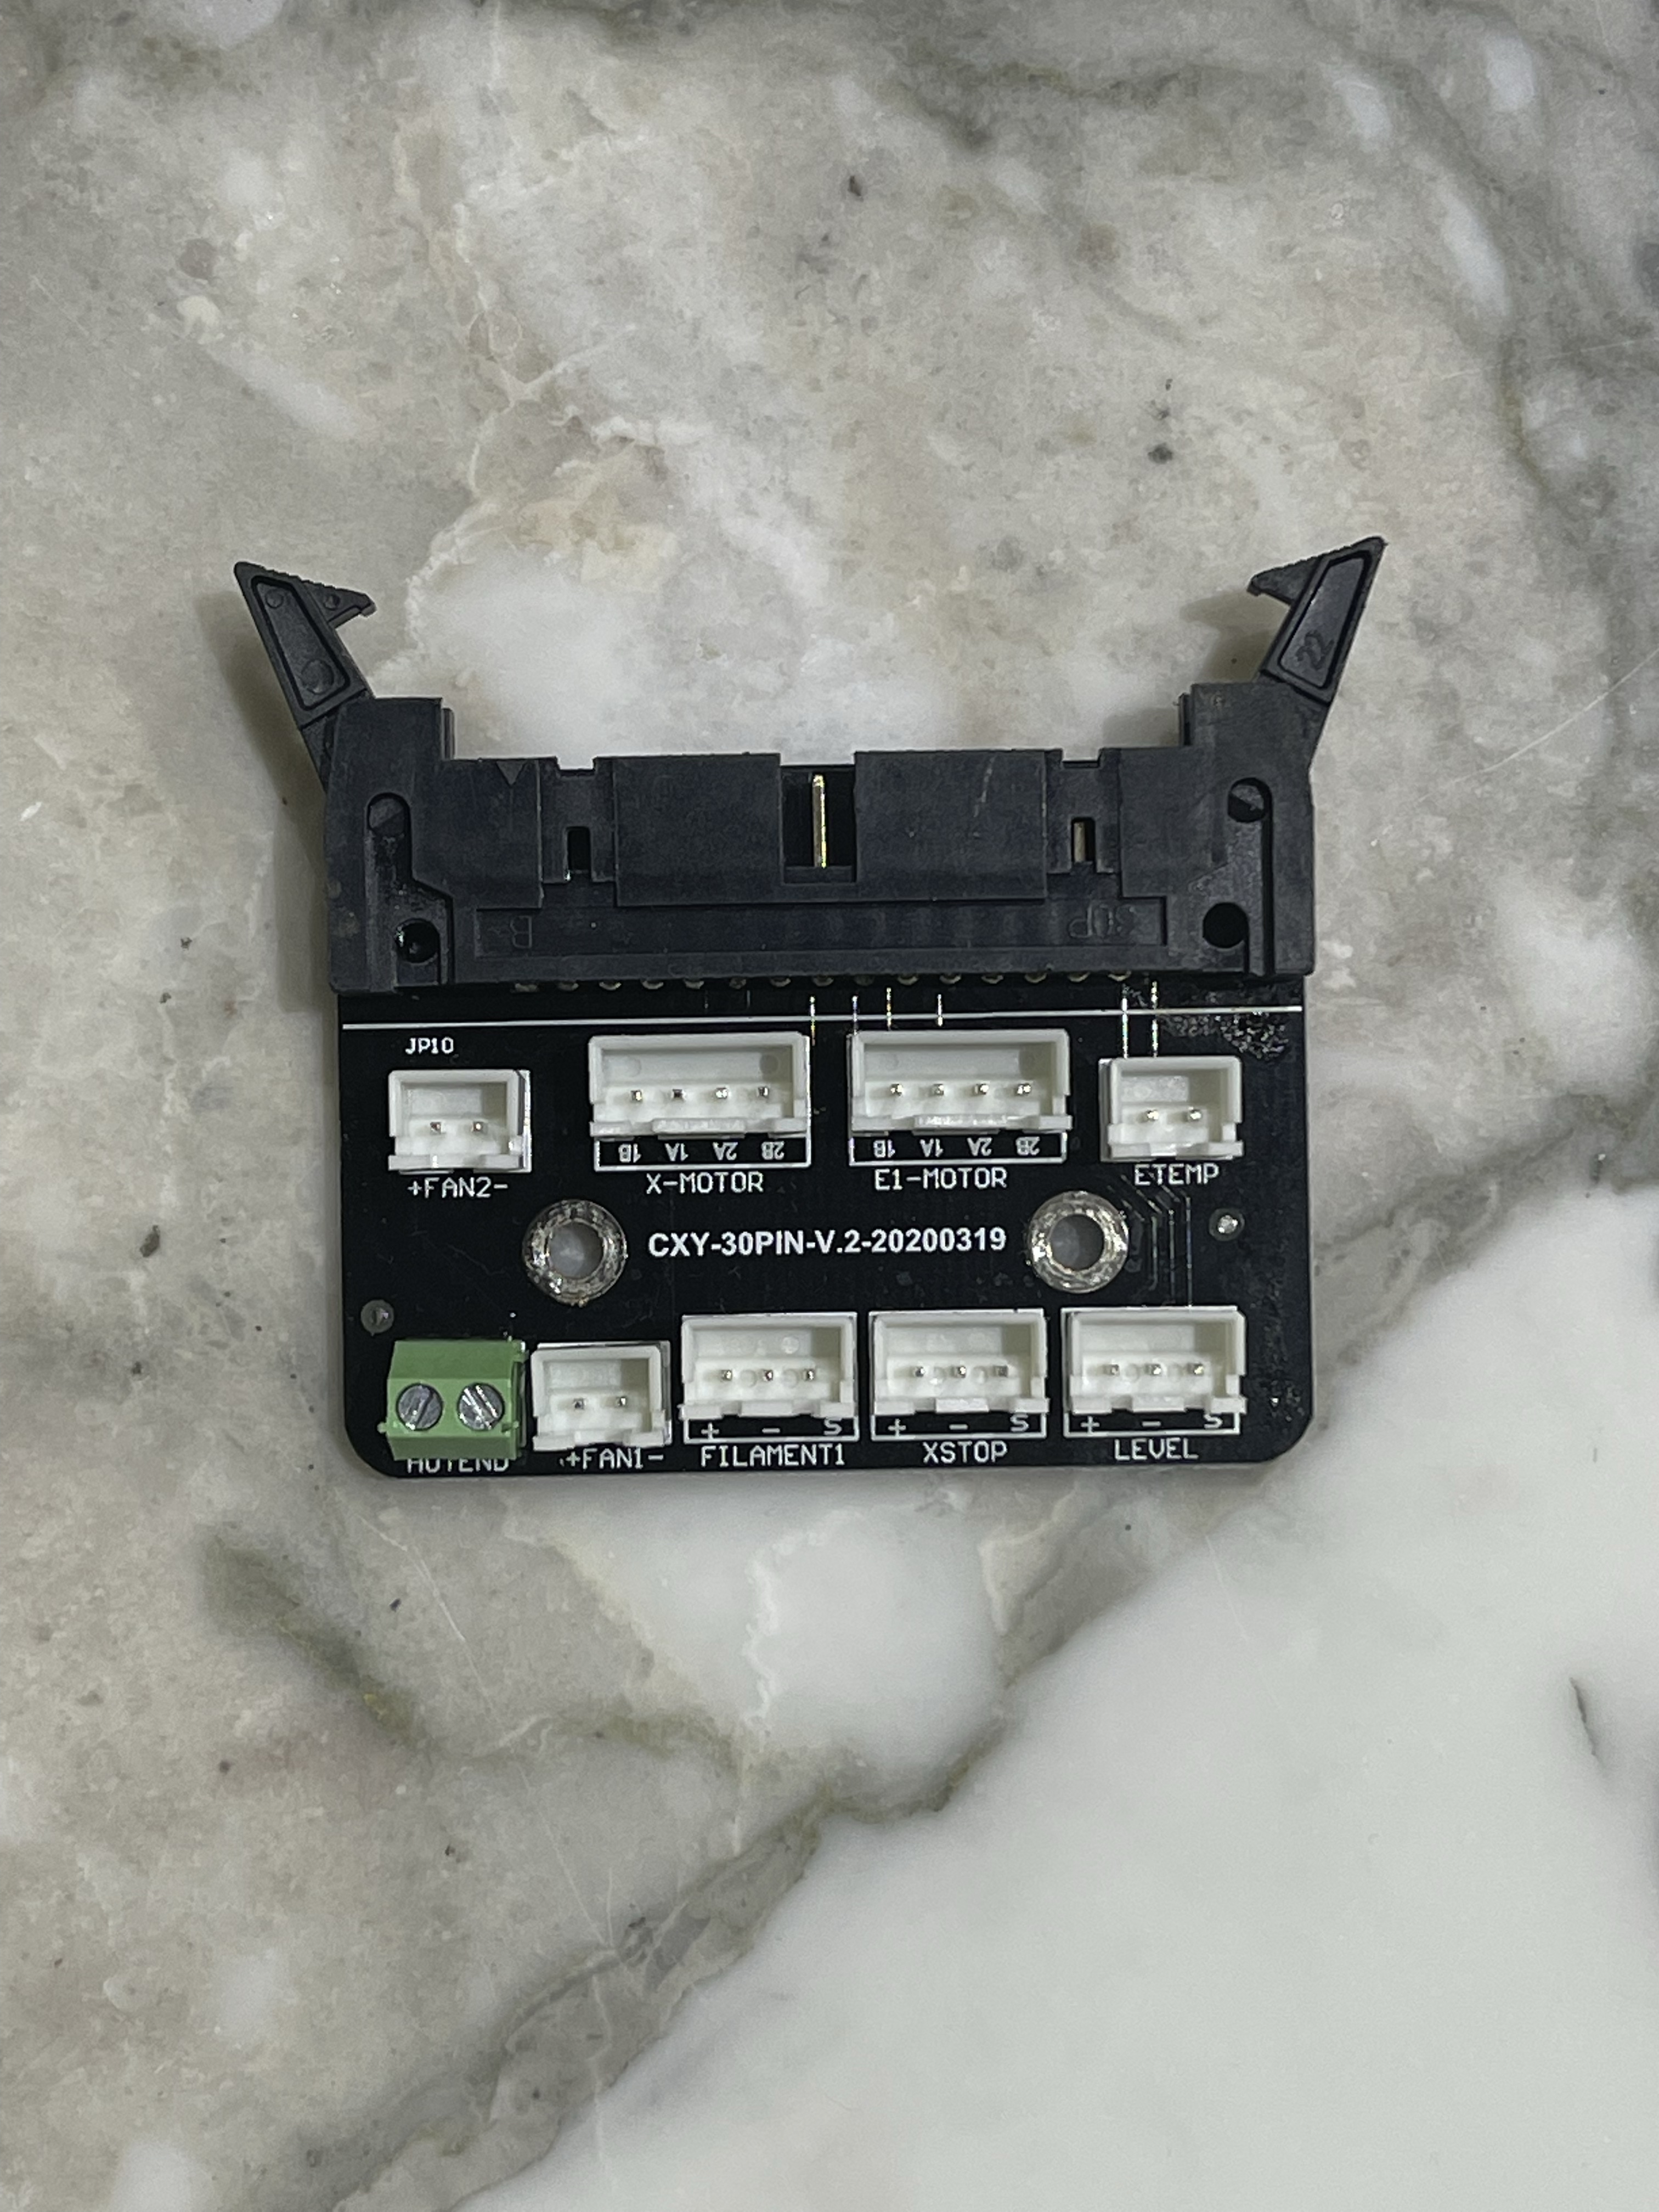 Tronxy X5SA-600 Klipper Conversion Part 2 – The Scary Bit – Rewiring